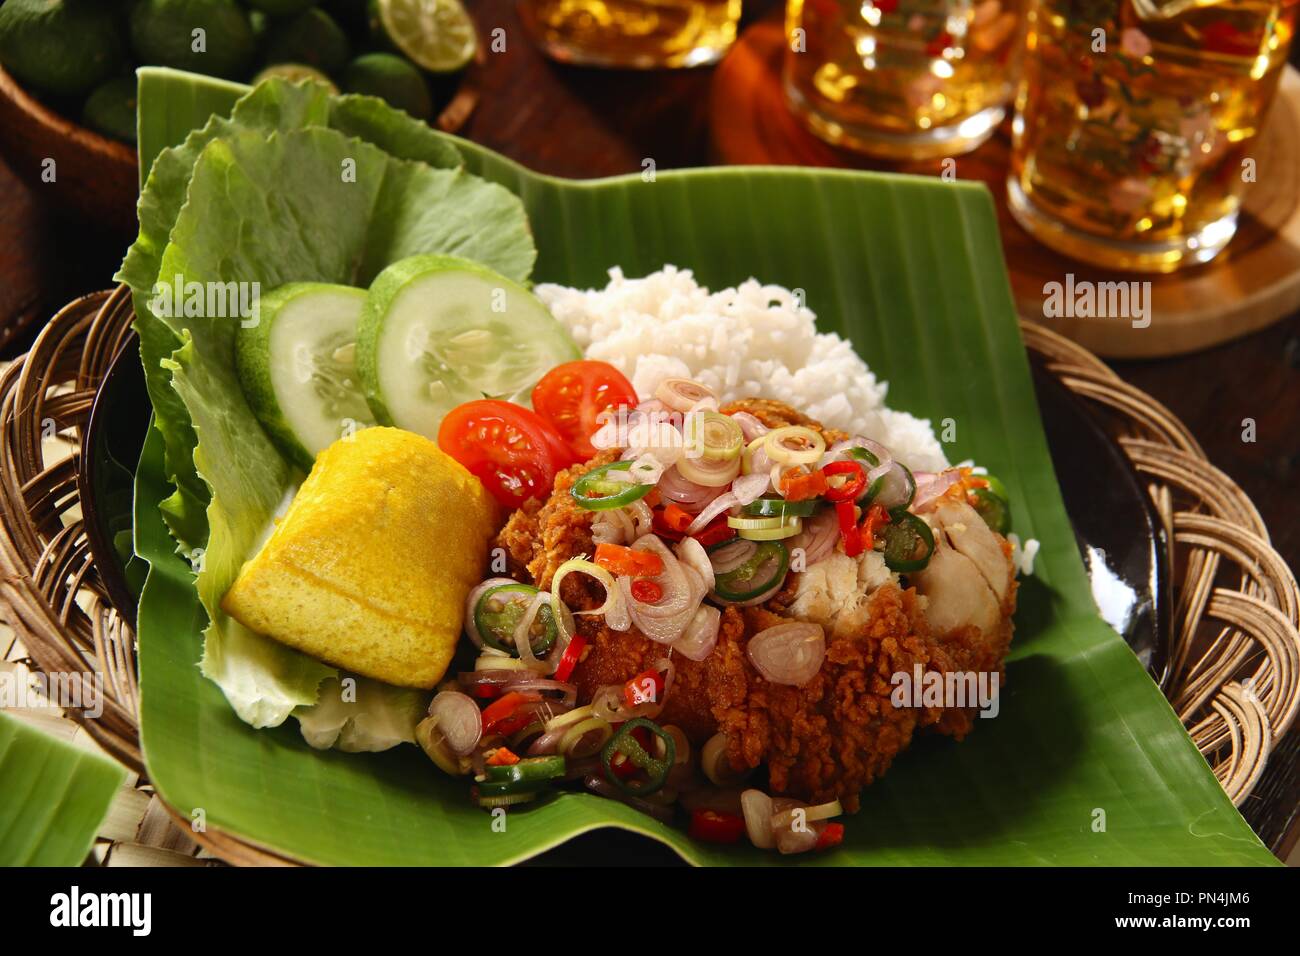 Ayam Geprek Sambal Matah. Fusion Street Food Gericht der Southern Fried Chicken gekrönt mit Sambal Matah, die Balinesische Chili - zitronengras Salsa. Stockfoto